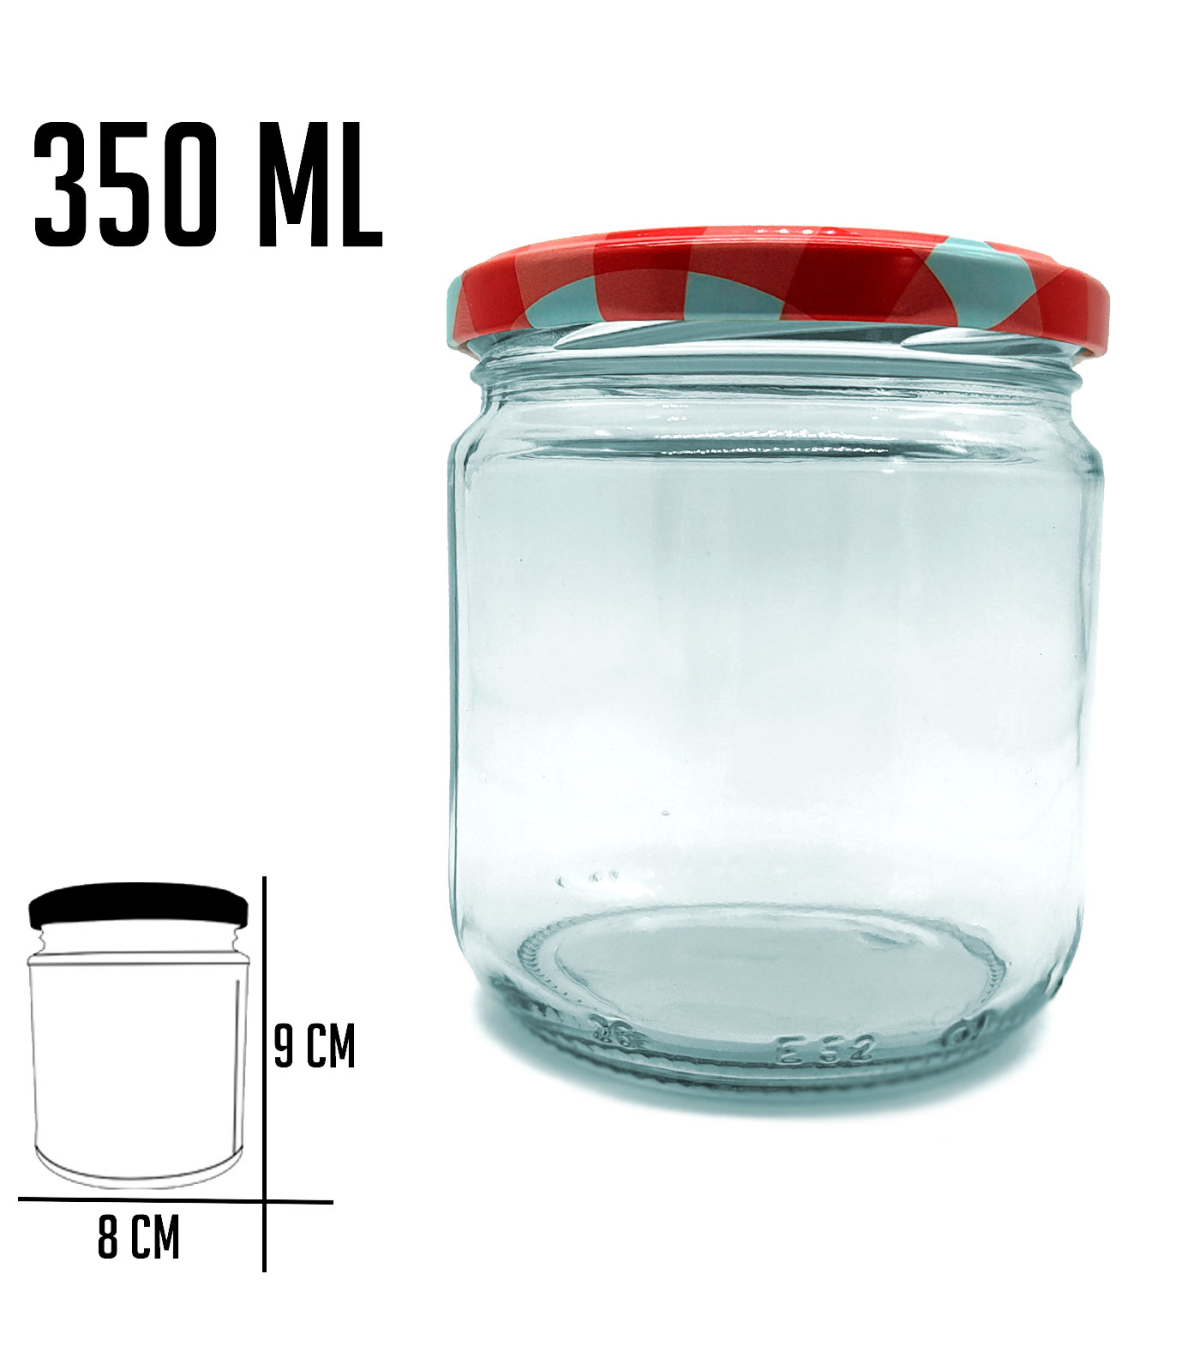 Tradineur - Bote multiusos transparente con rosca metálica - Fabricado en  vidrio - Capacidad 250 ml - Almacenamiento de objetos